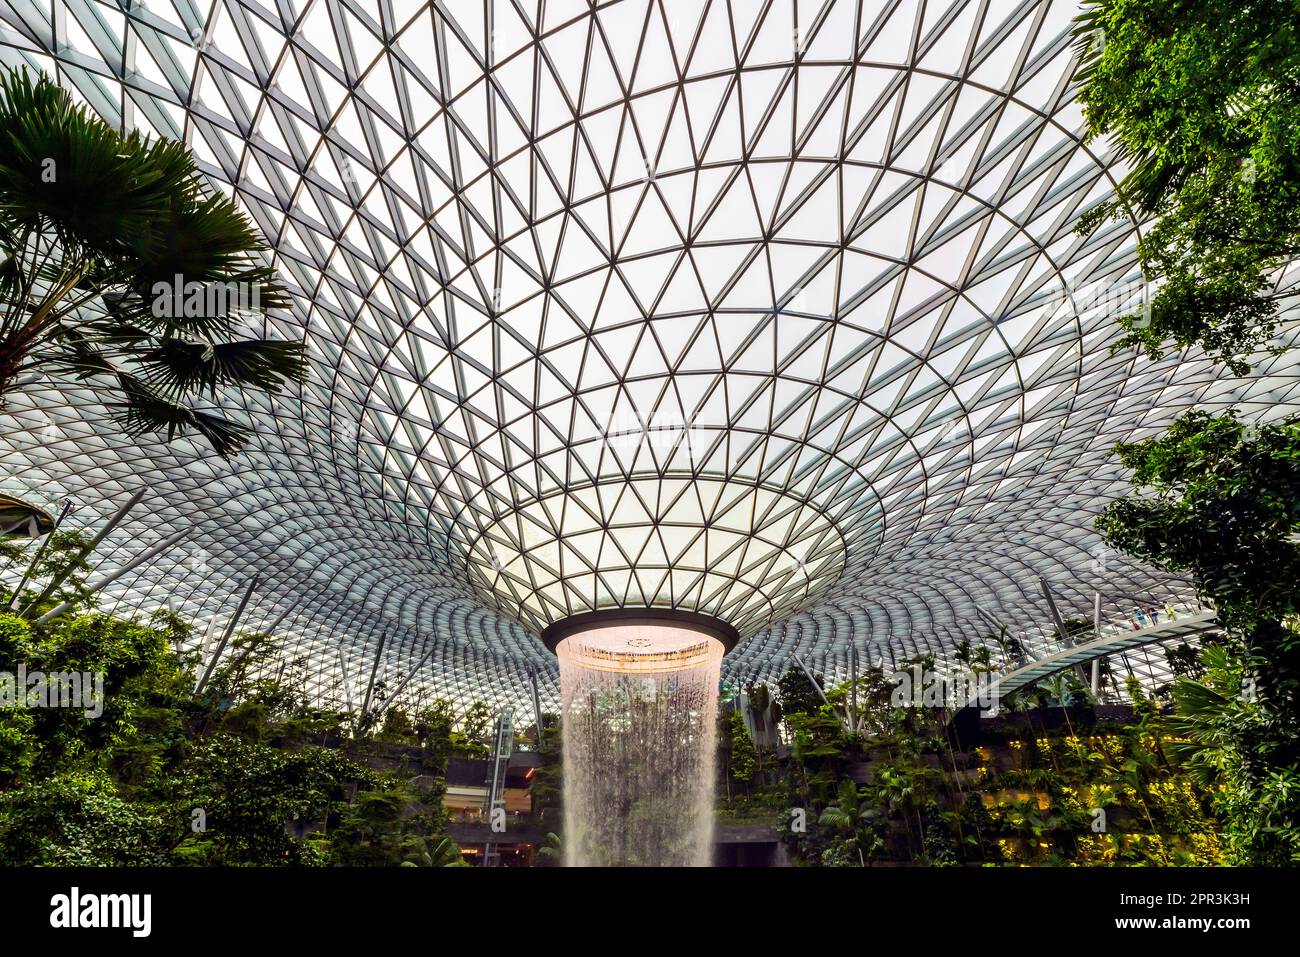 Singapur. Juwel, Wasserfall und Indoor Forest am Changi Airport Singapur. Singapur Changi wurde zum besten Flughafen der Welt gekrönt. Stockfoto